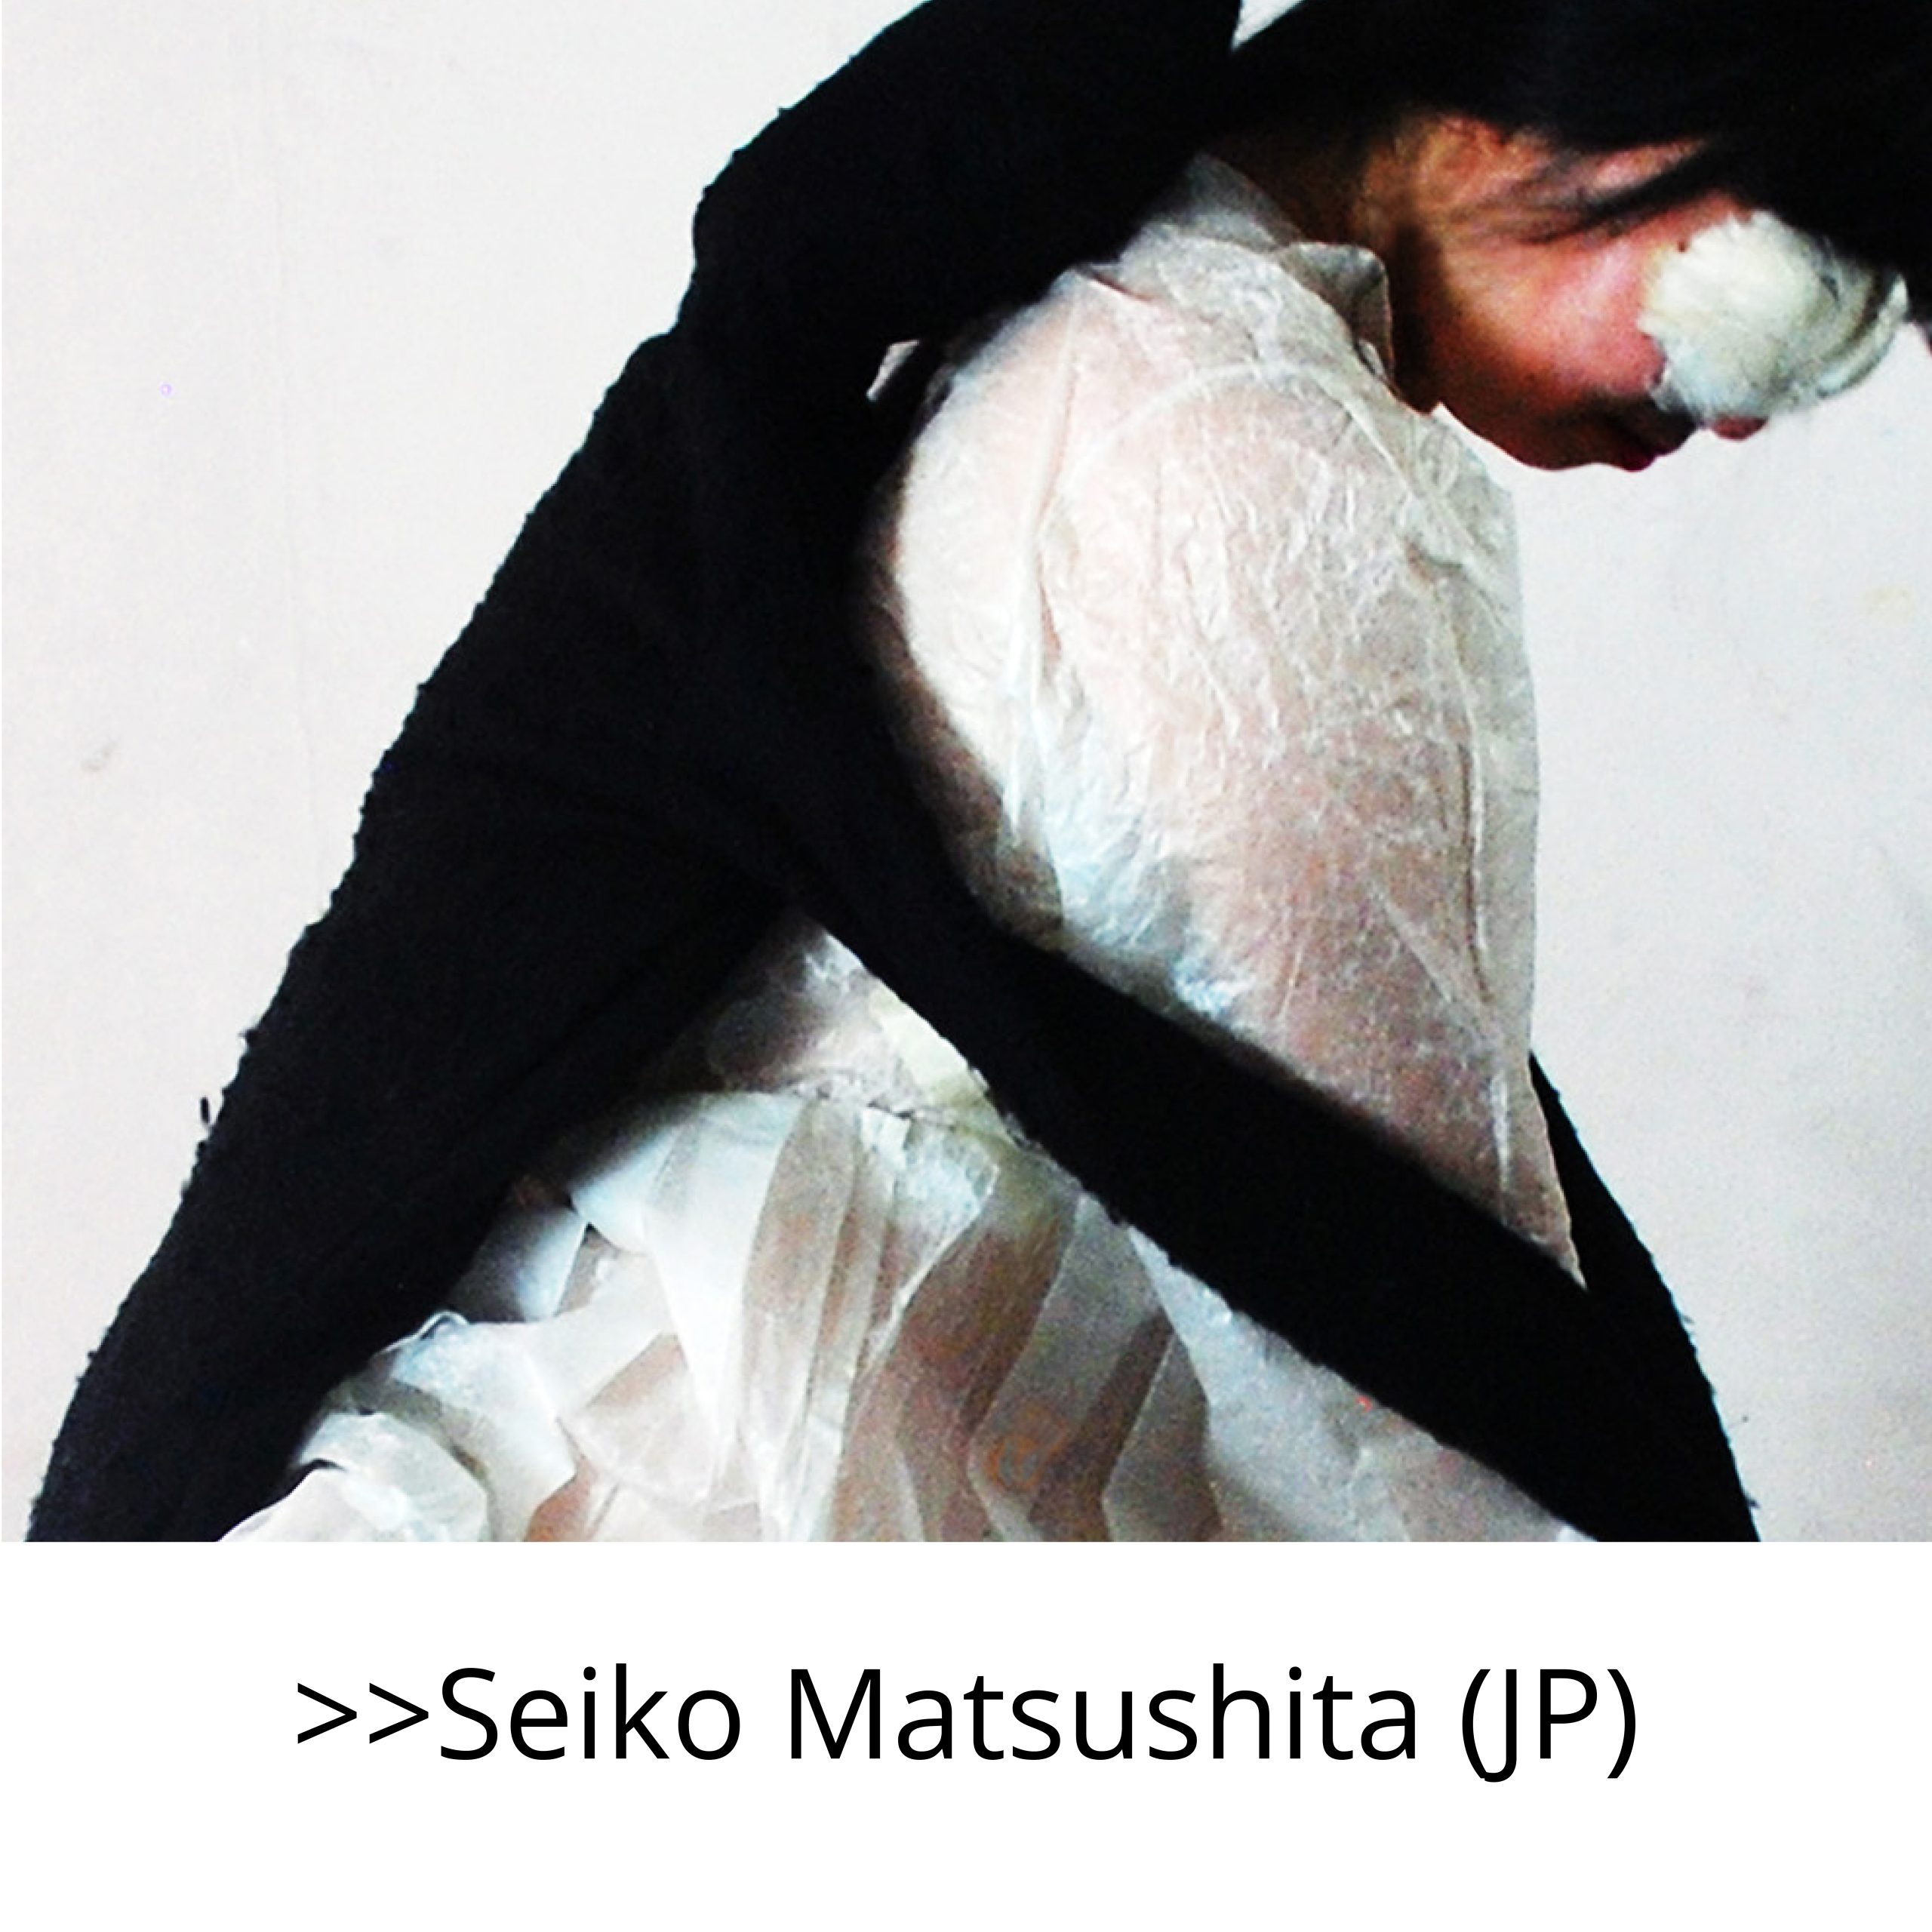 SEIKO MATSUSHITA (JP)